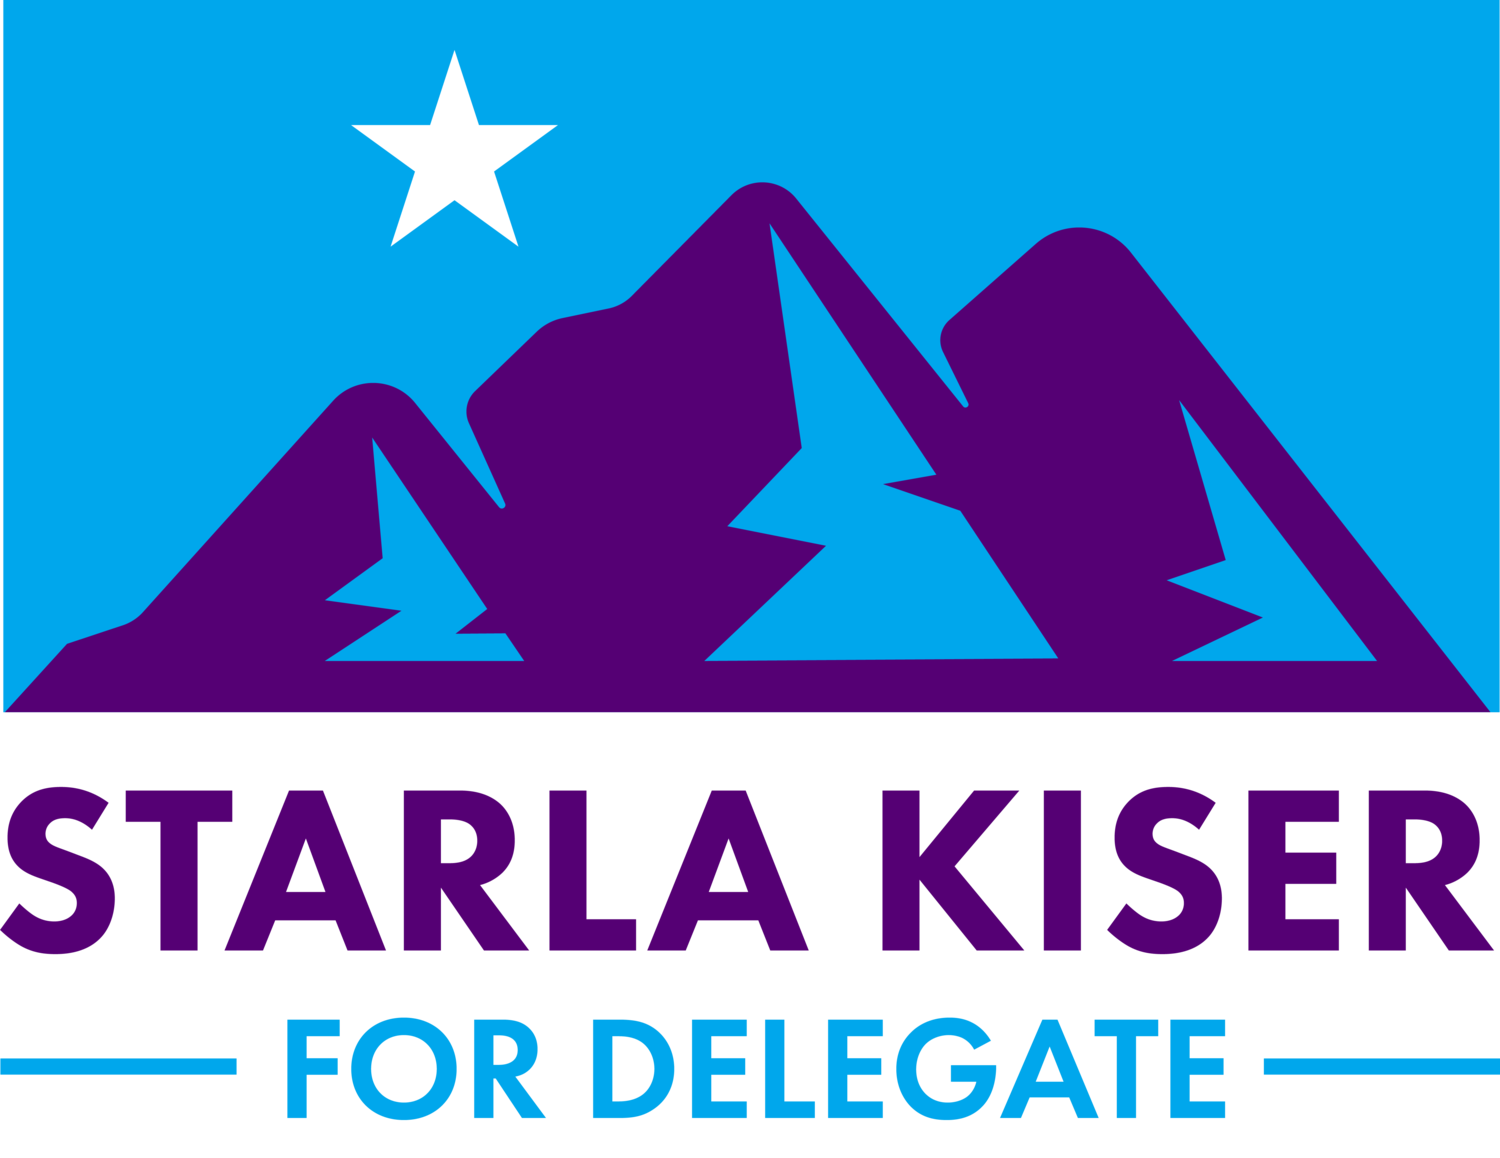 Starla Kiser for Delegate